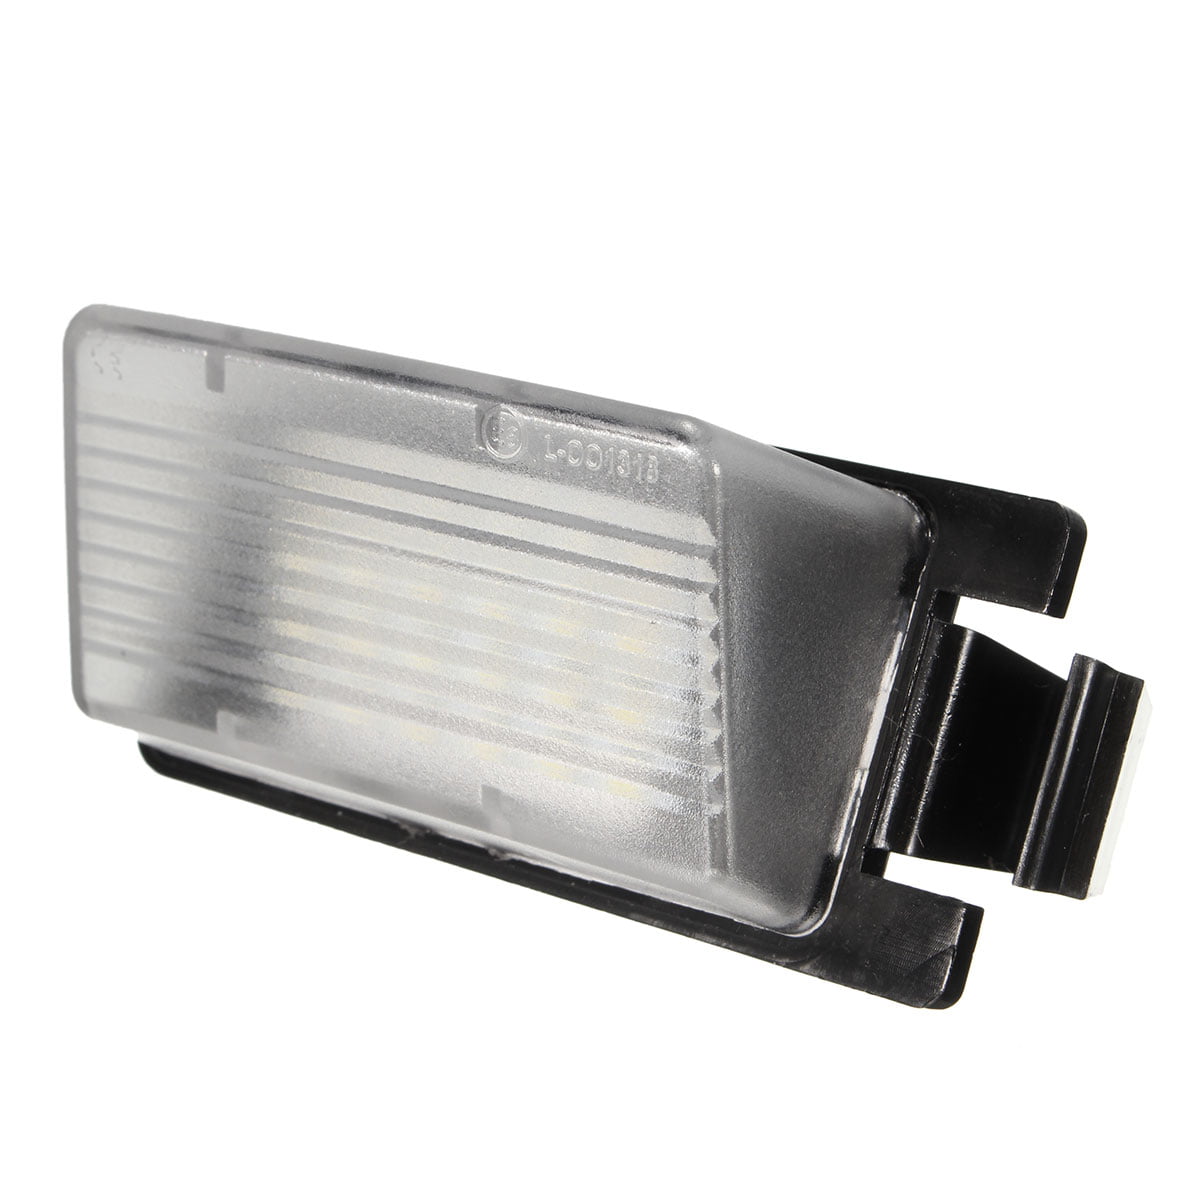 BRIGHT 2PC White LED License Plate Light Lamp For Nissan 350Z 370Z GTR G35 G37